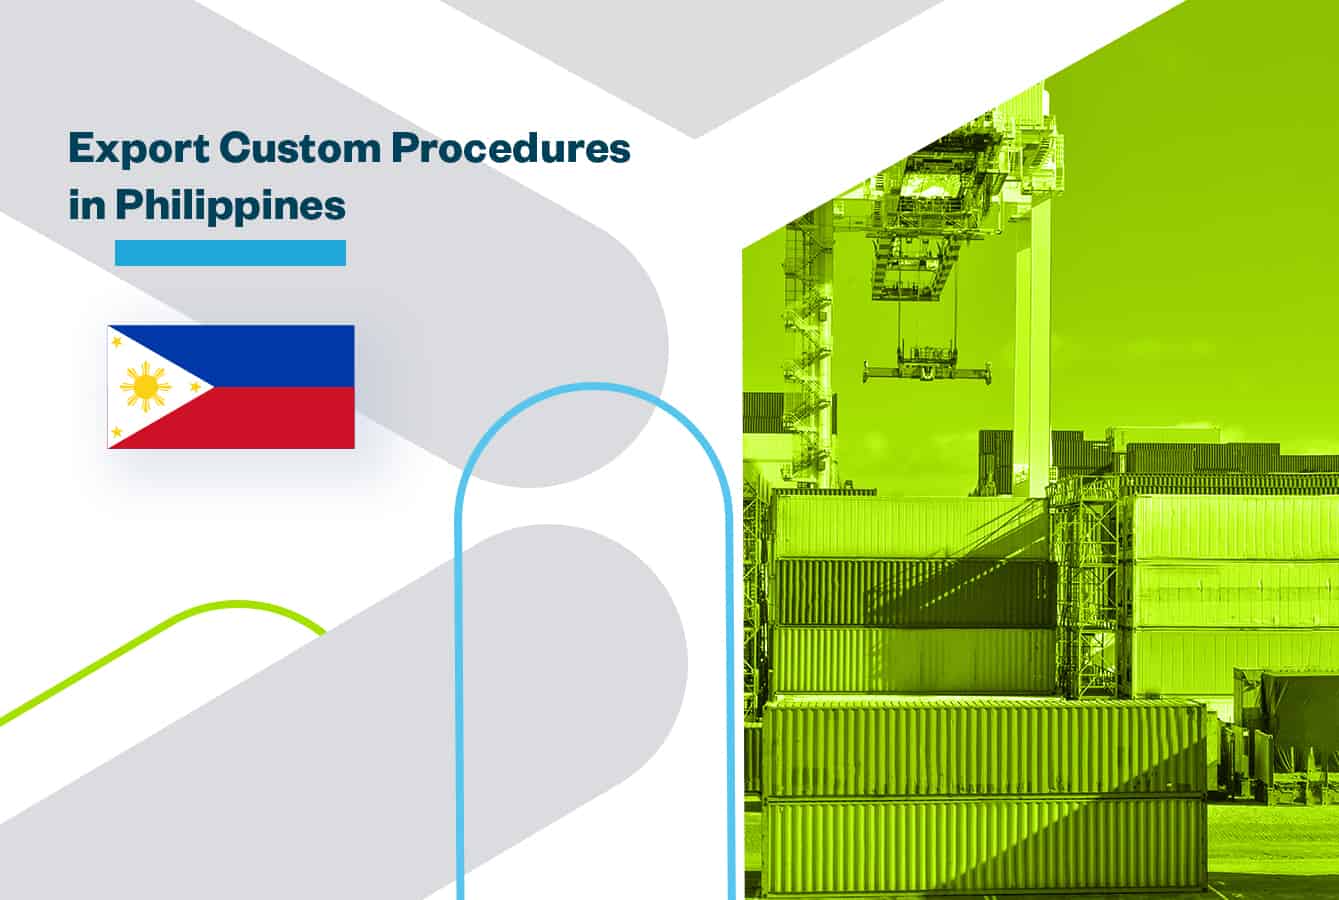 Export Customs Procedures in Philippines